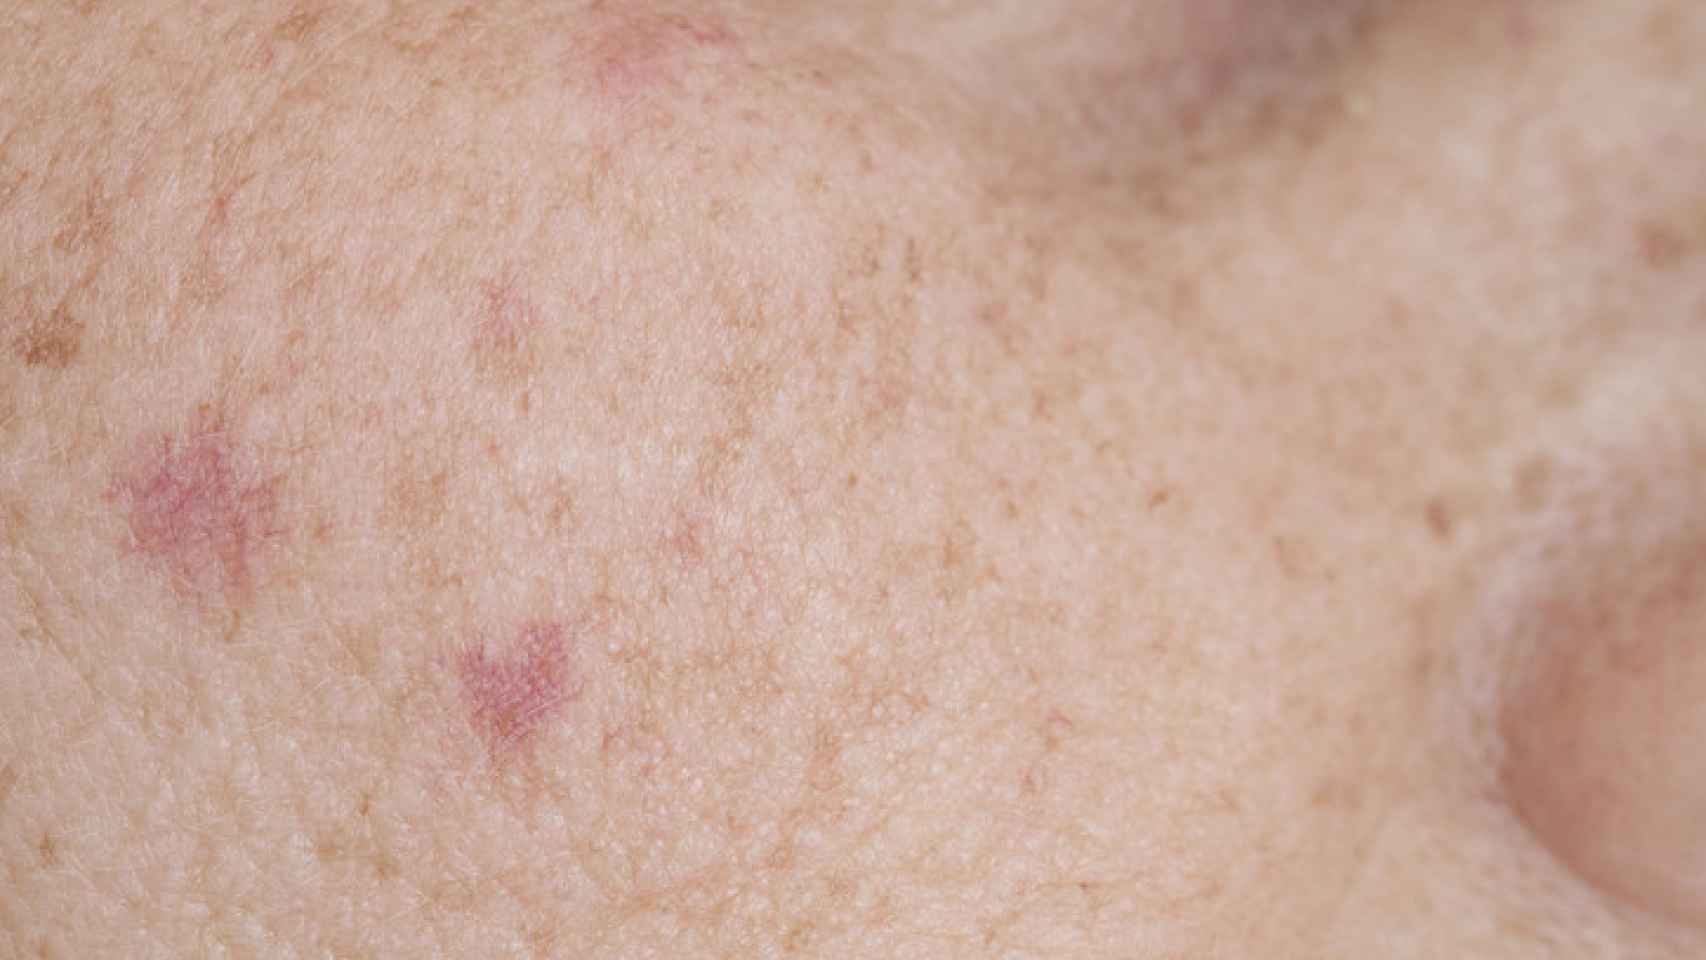 ¿Cómo eliminar las manchas de la cara? 3 tratamientos recomendados por los dermatólogos